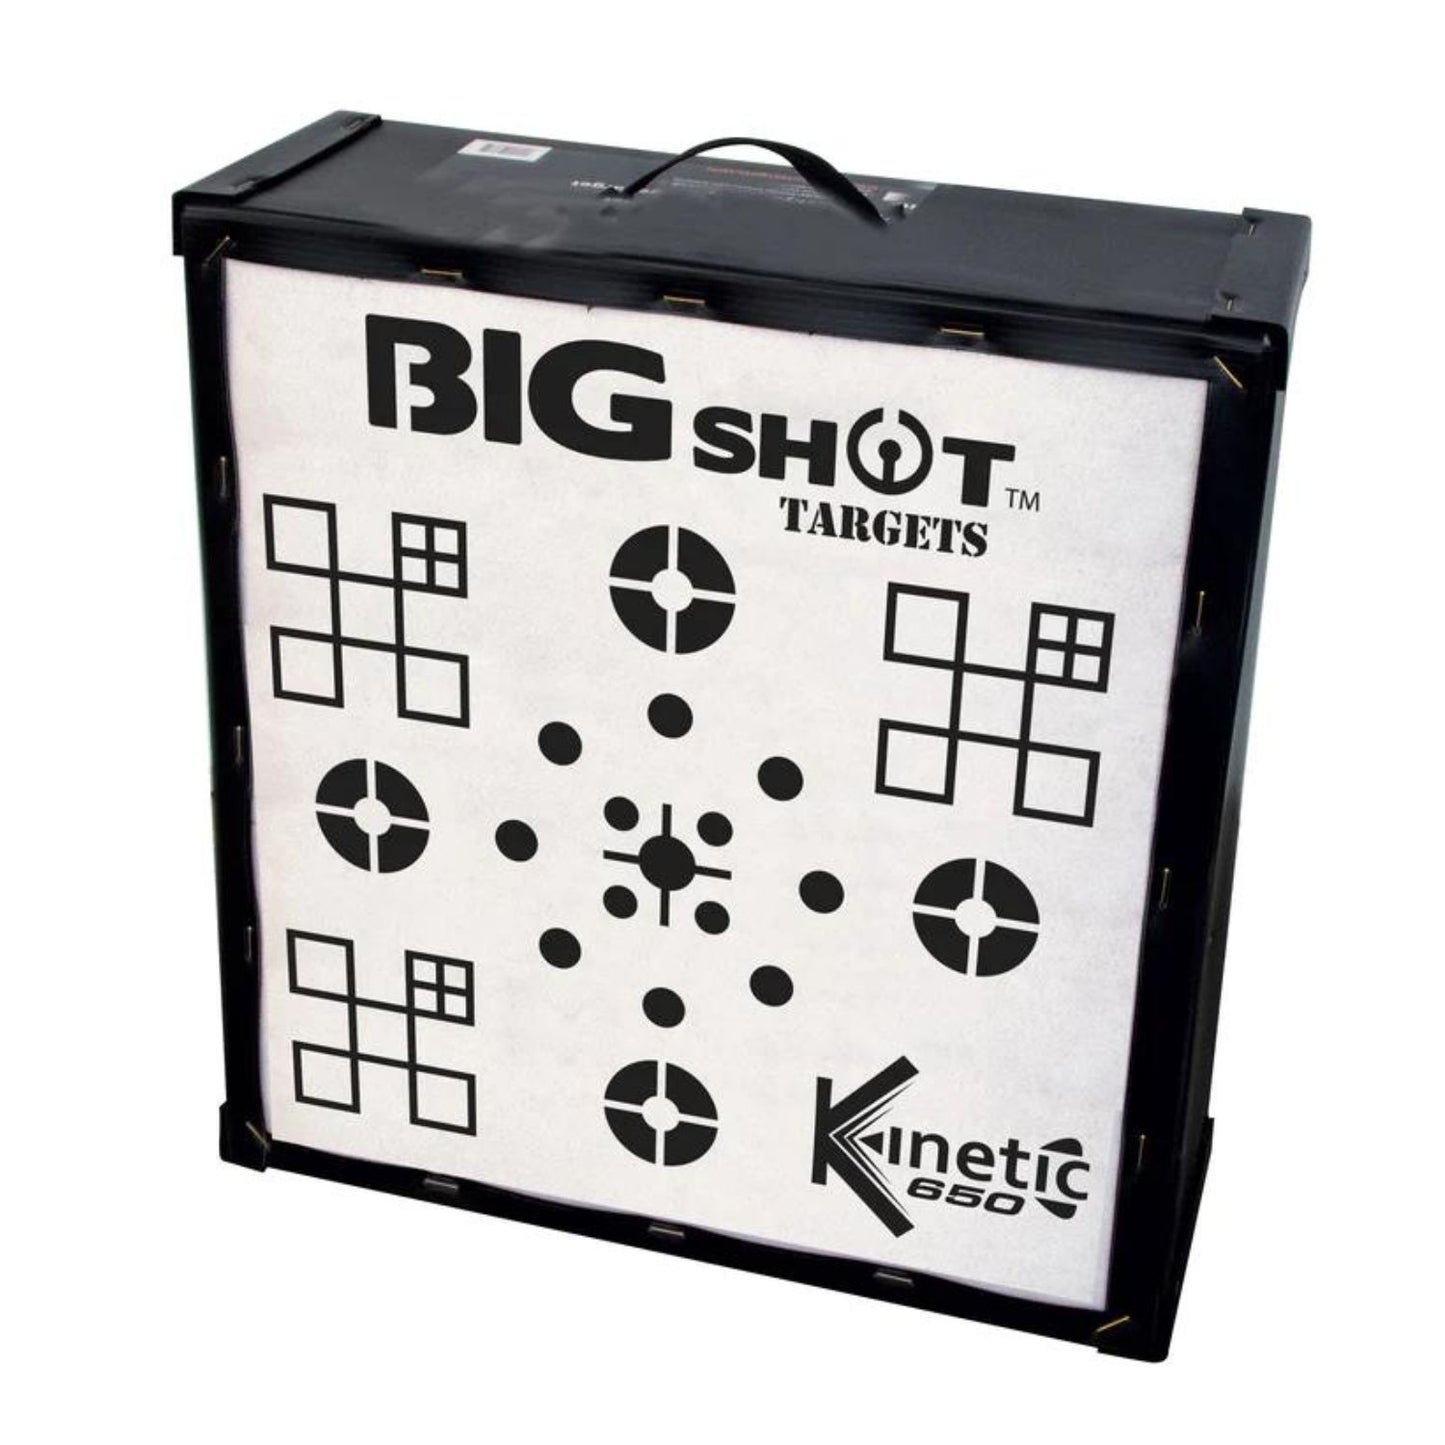 BigShot Kinetic 650 Iron Man 20" Target